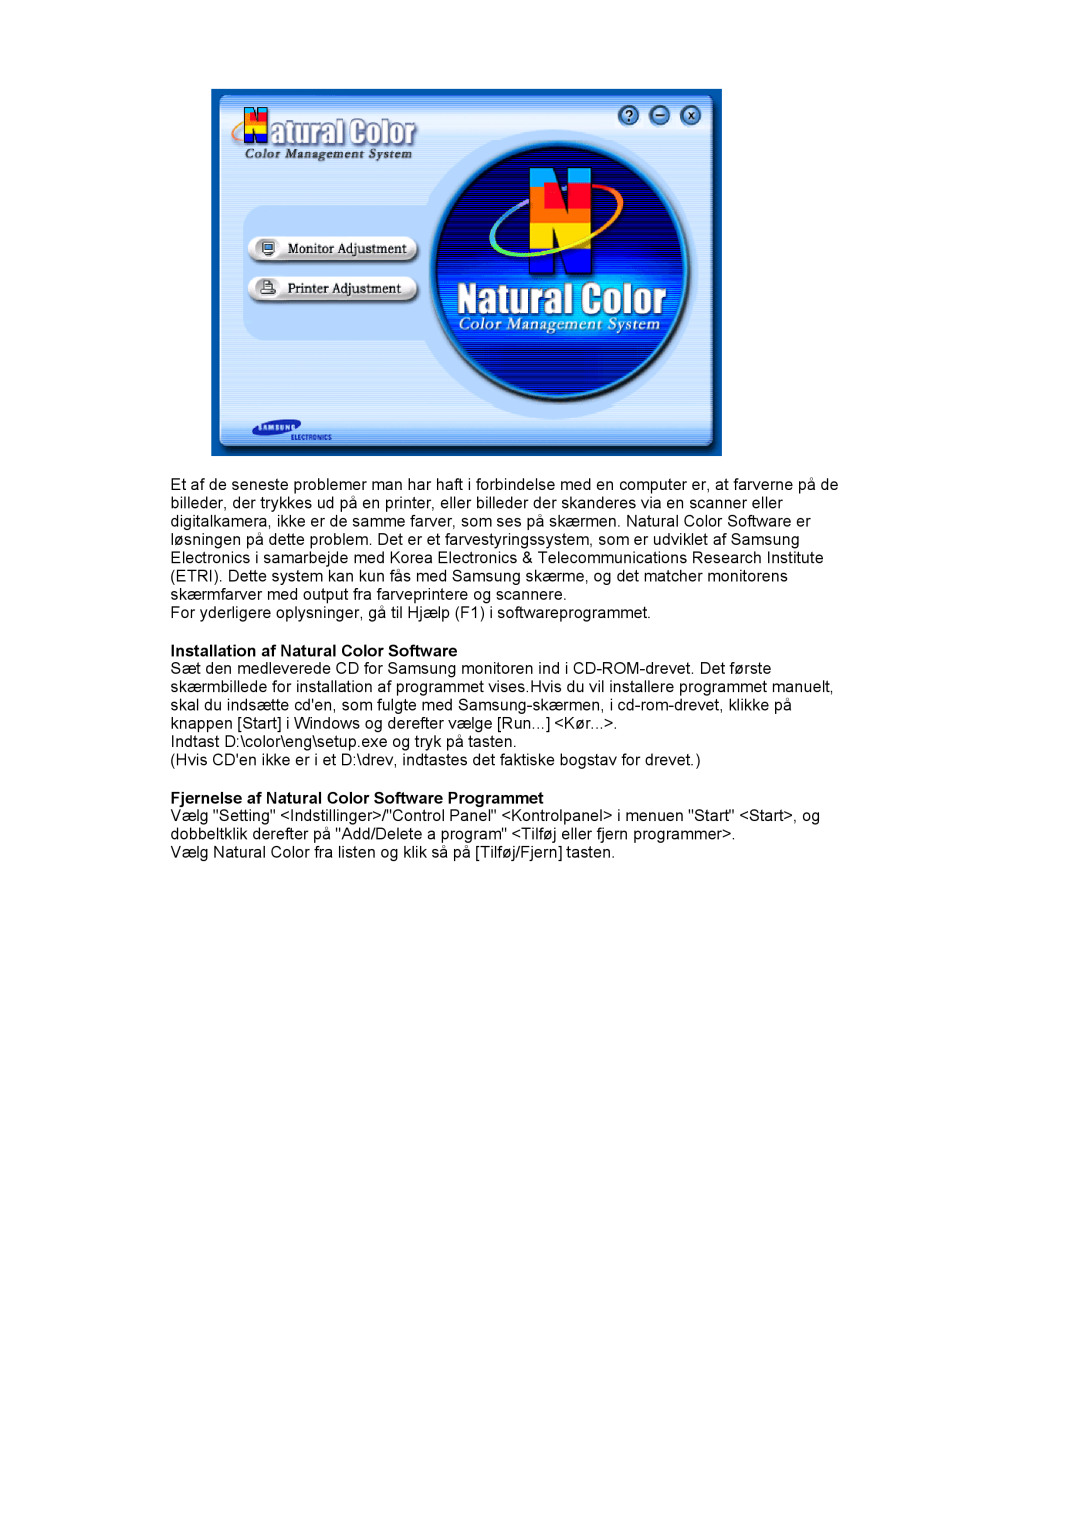 Samsung LS17MJVKS/EDC manual Installation af Natural Color Software, Fjernelse af Natural Color Software Programmet 